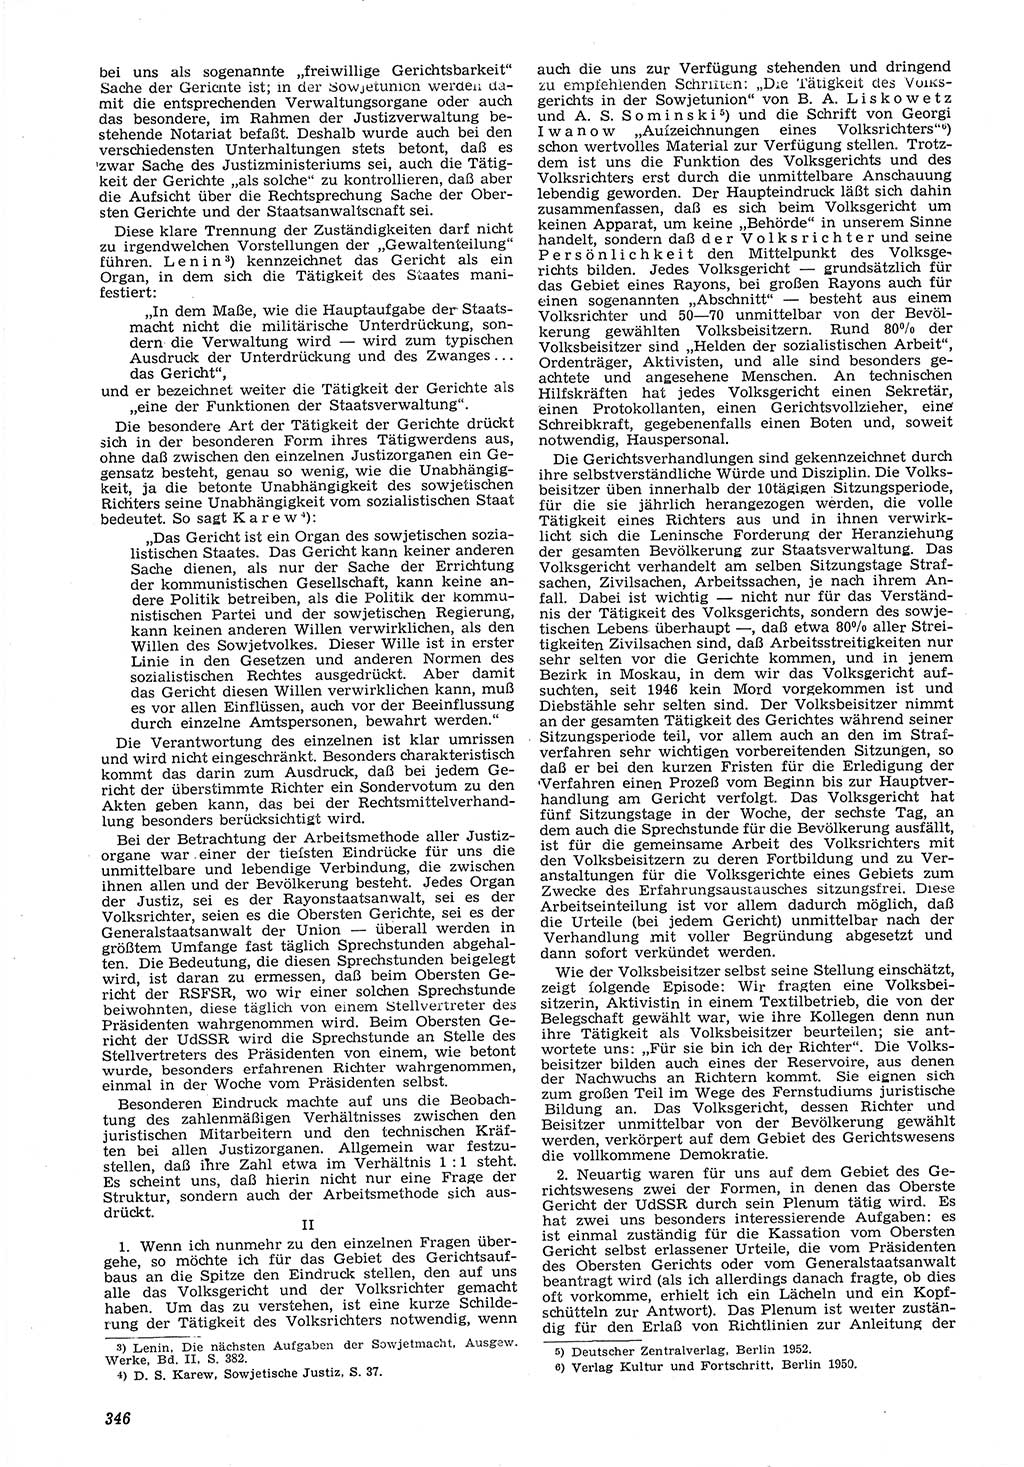 Neue Justiz (NJ), Zeitschrift für Recht und Rechtswissenschaft [Deutsche Demokratische Republik (DDR)], 6. Jahrgang 1952, Seite 346 (NJ DDR 1952, S. 346)